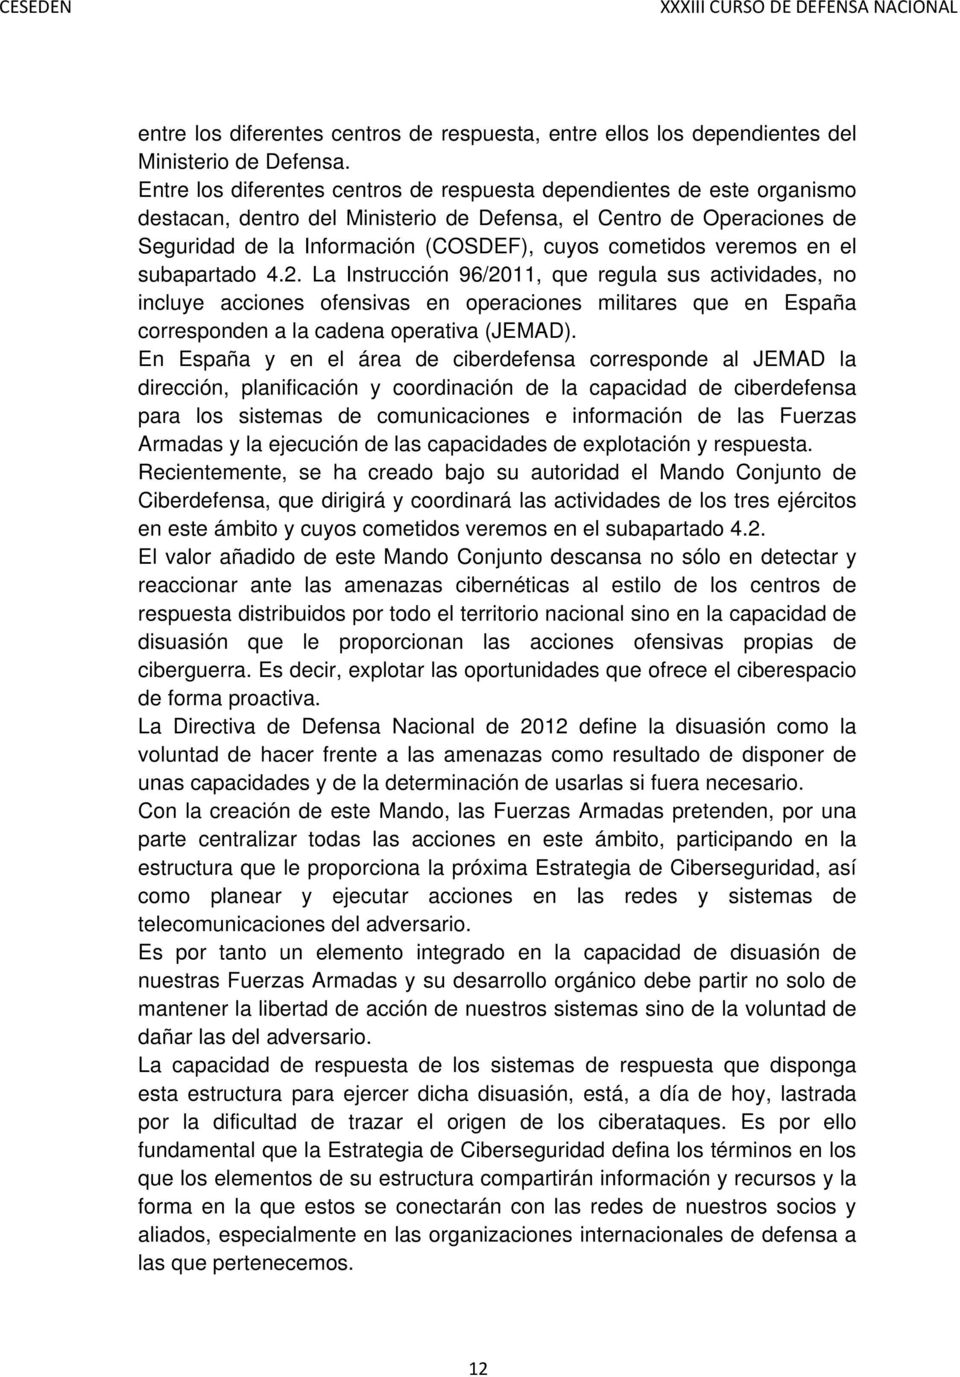 veremos en el subapartado 4.2. La Instrucción 96/2011, que regula sus actividades, no incluye acciones ofensivas en operaciones militares que en España corresponden a la cadena operativa (JEMAD).